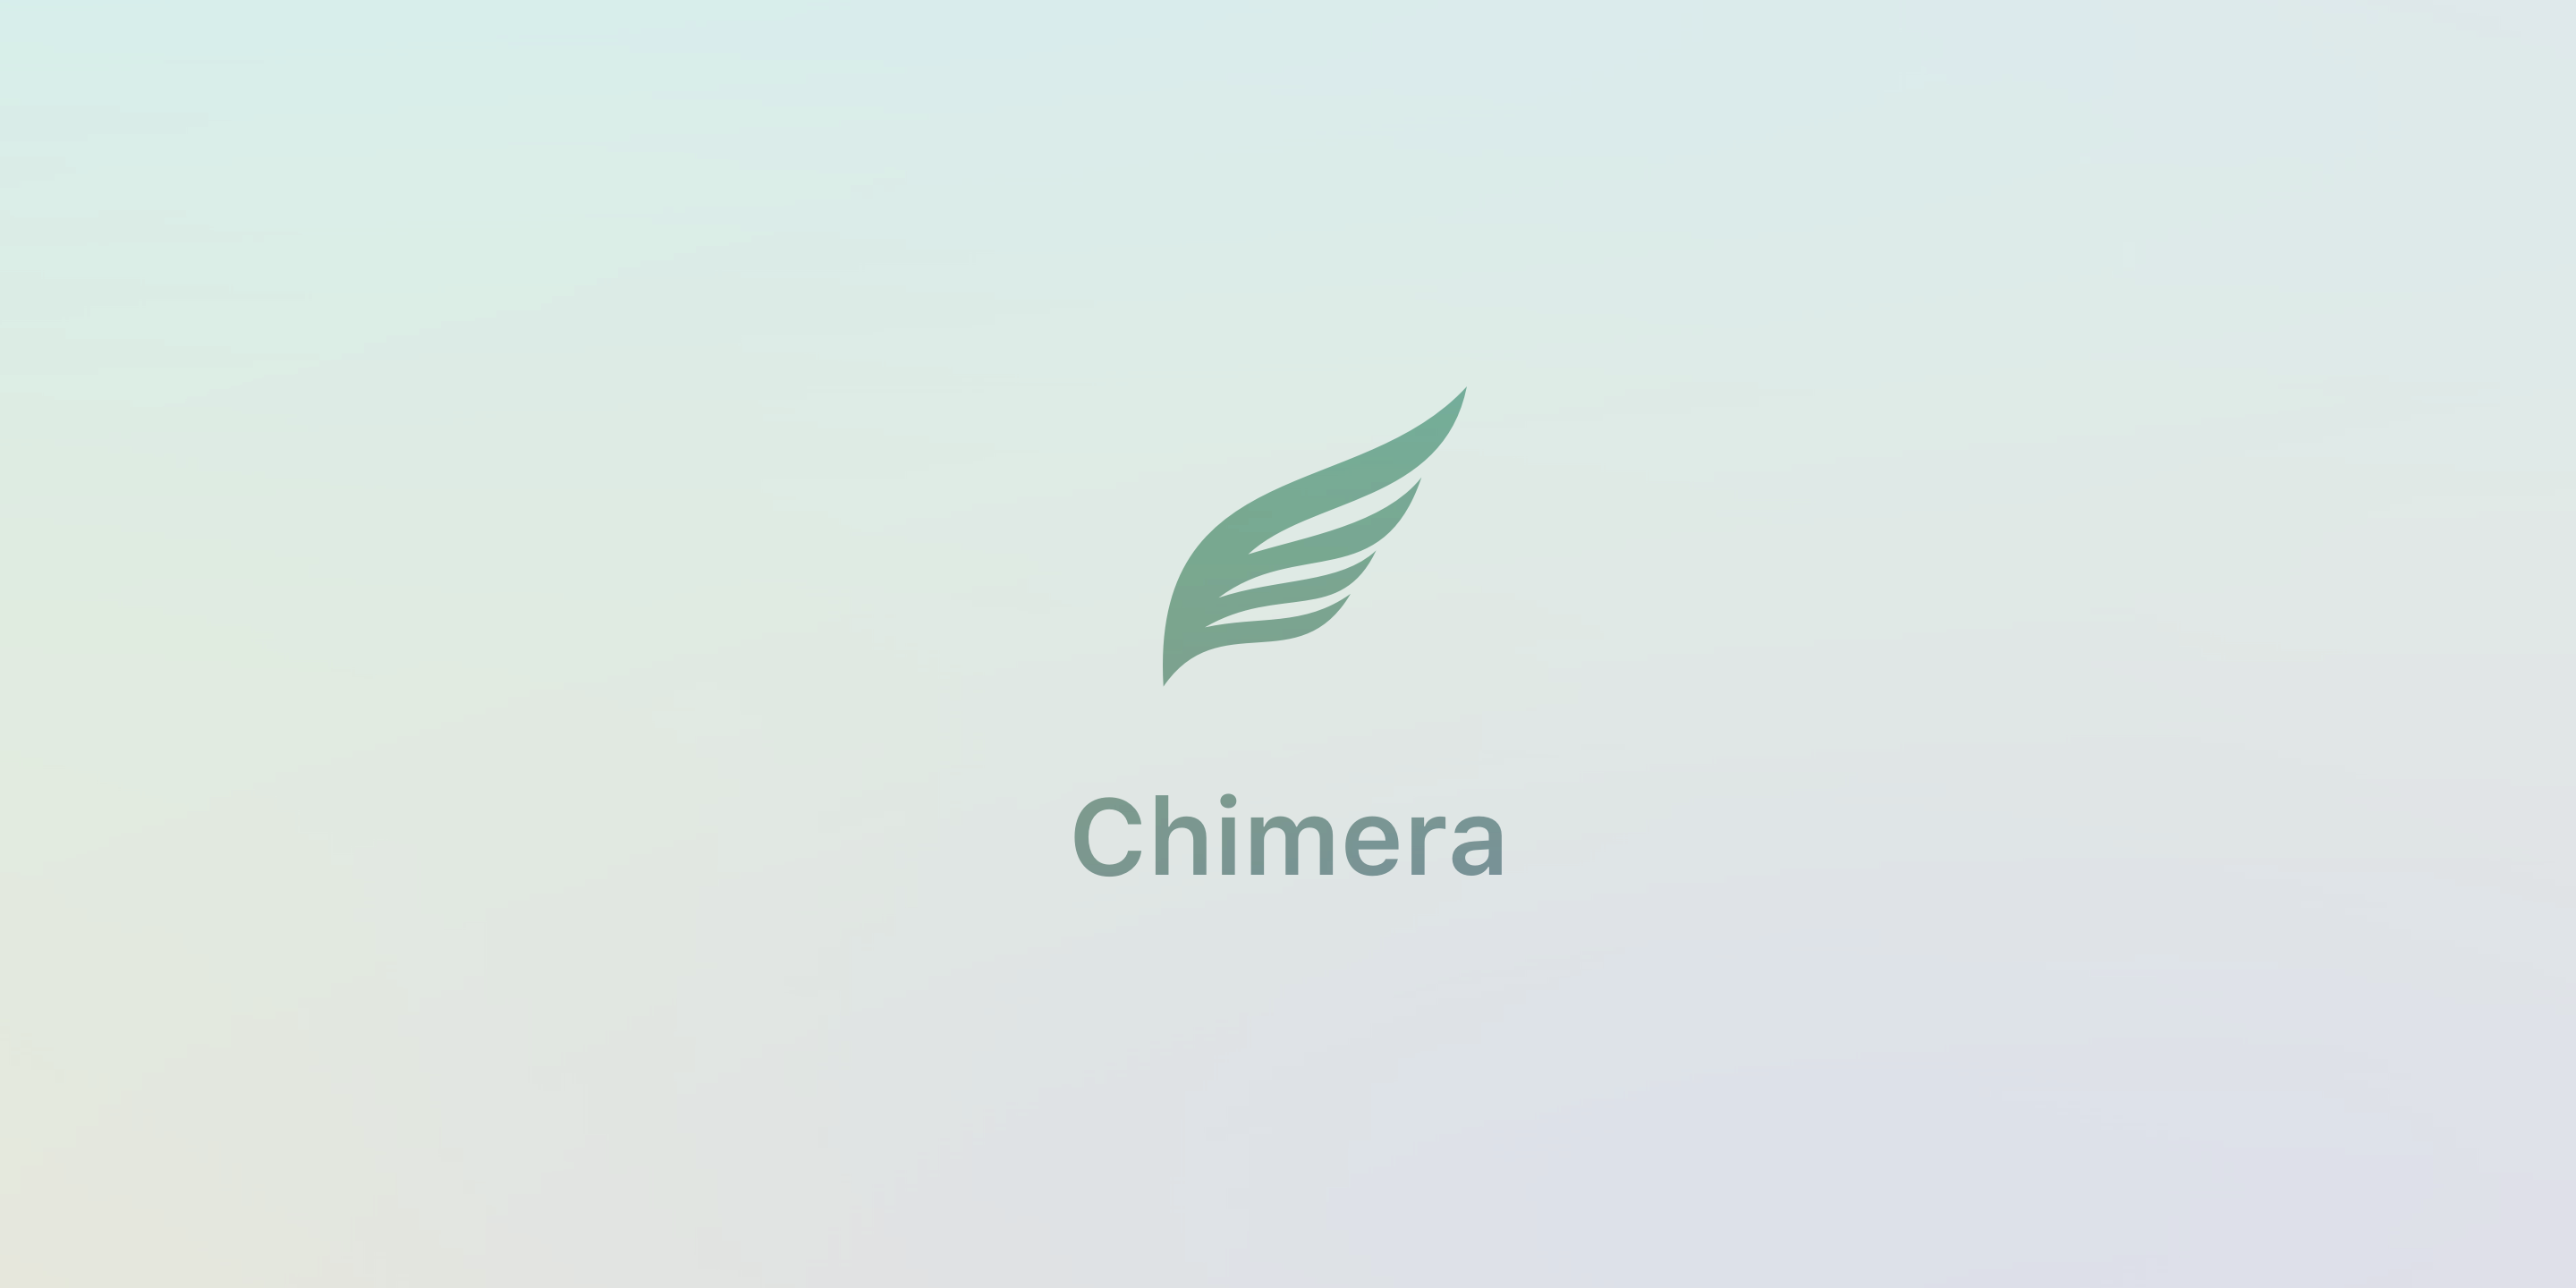 Chimera v1.2.7 und ChimeraTV v1.2.6 mit verbesserter Exploit-Unterstützung veröffentlicht 1